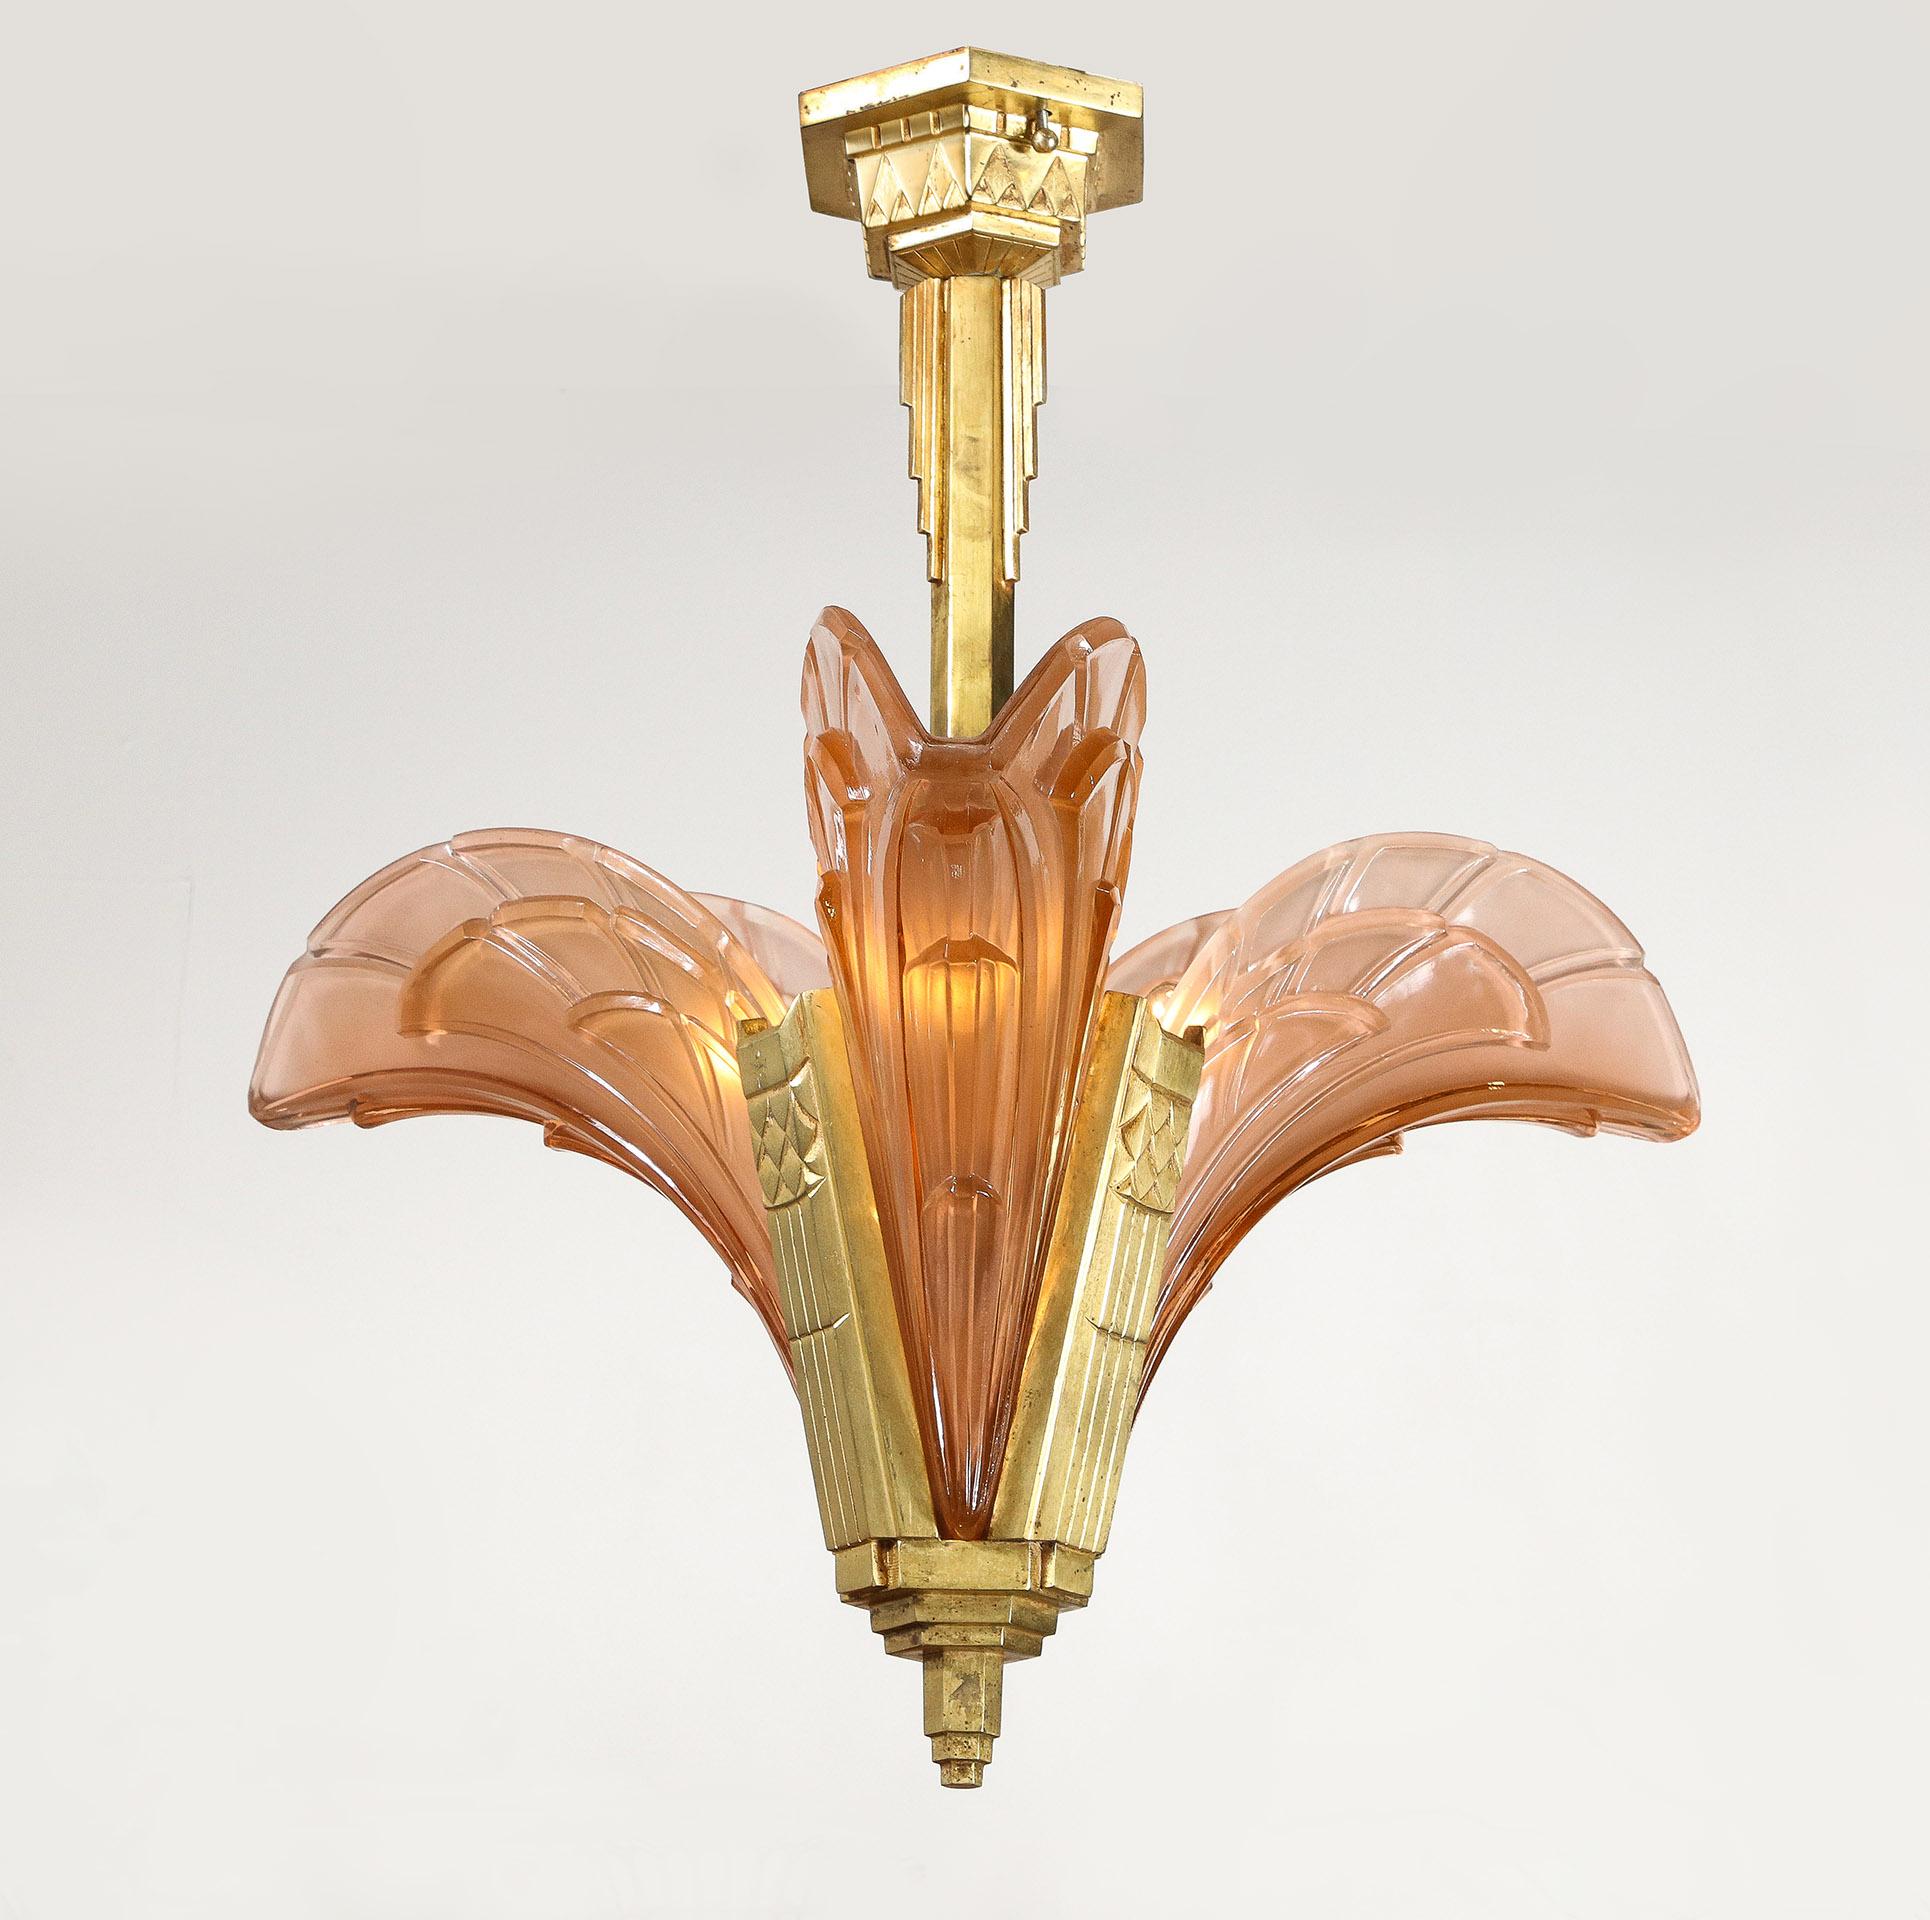 Le lustre art déco français a un cadre en bronze doré moulé supportant 3 abat-jours en verre rose pâle moulé. Chaque signature : ESG 1095 France